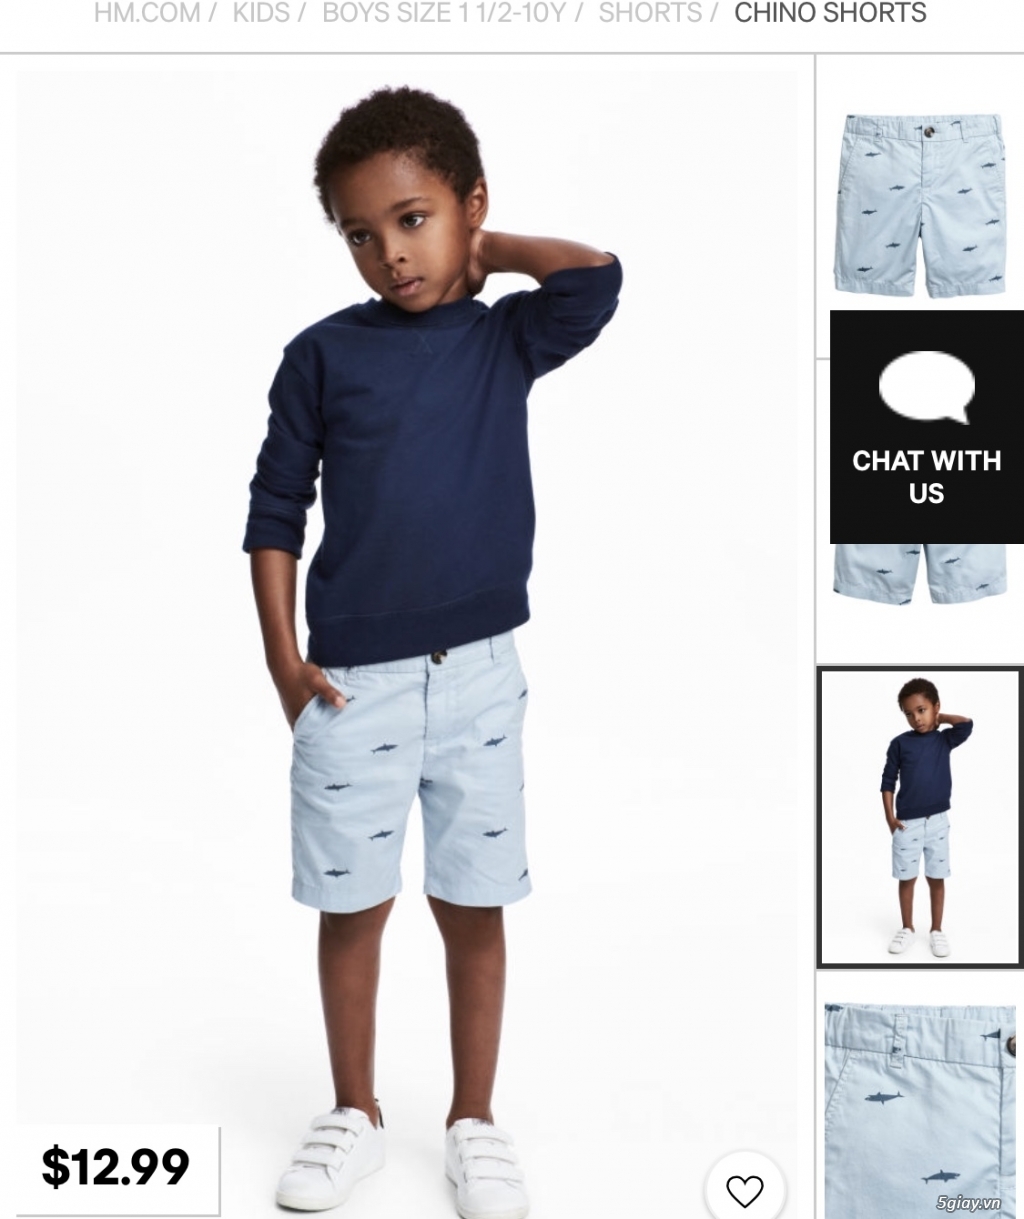 Chuyên quần áo và phụ kiện H&M cho bé hàng chính hãng - 11